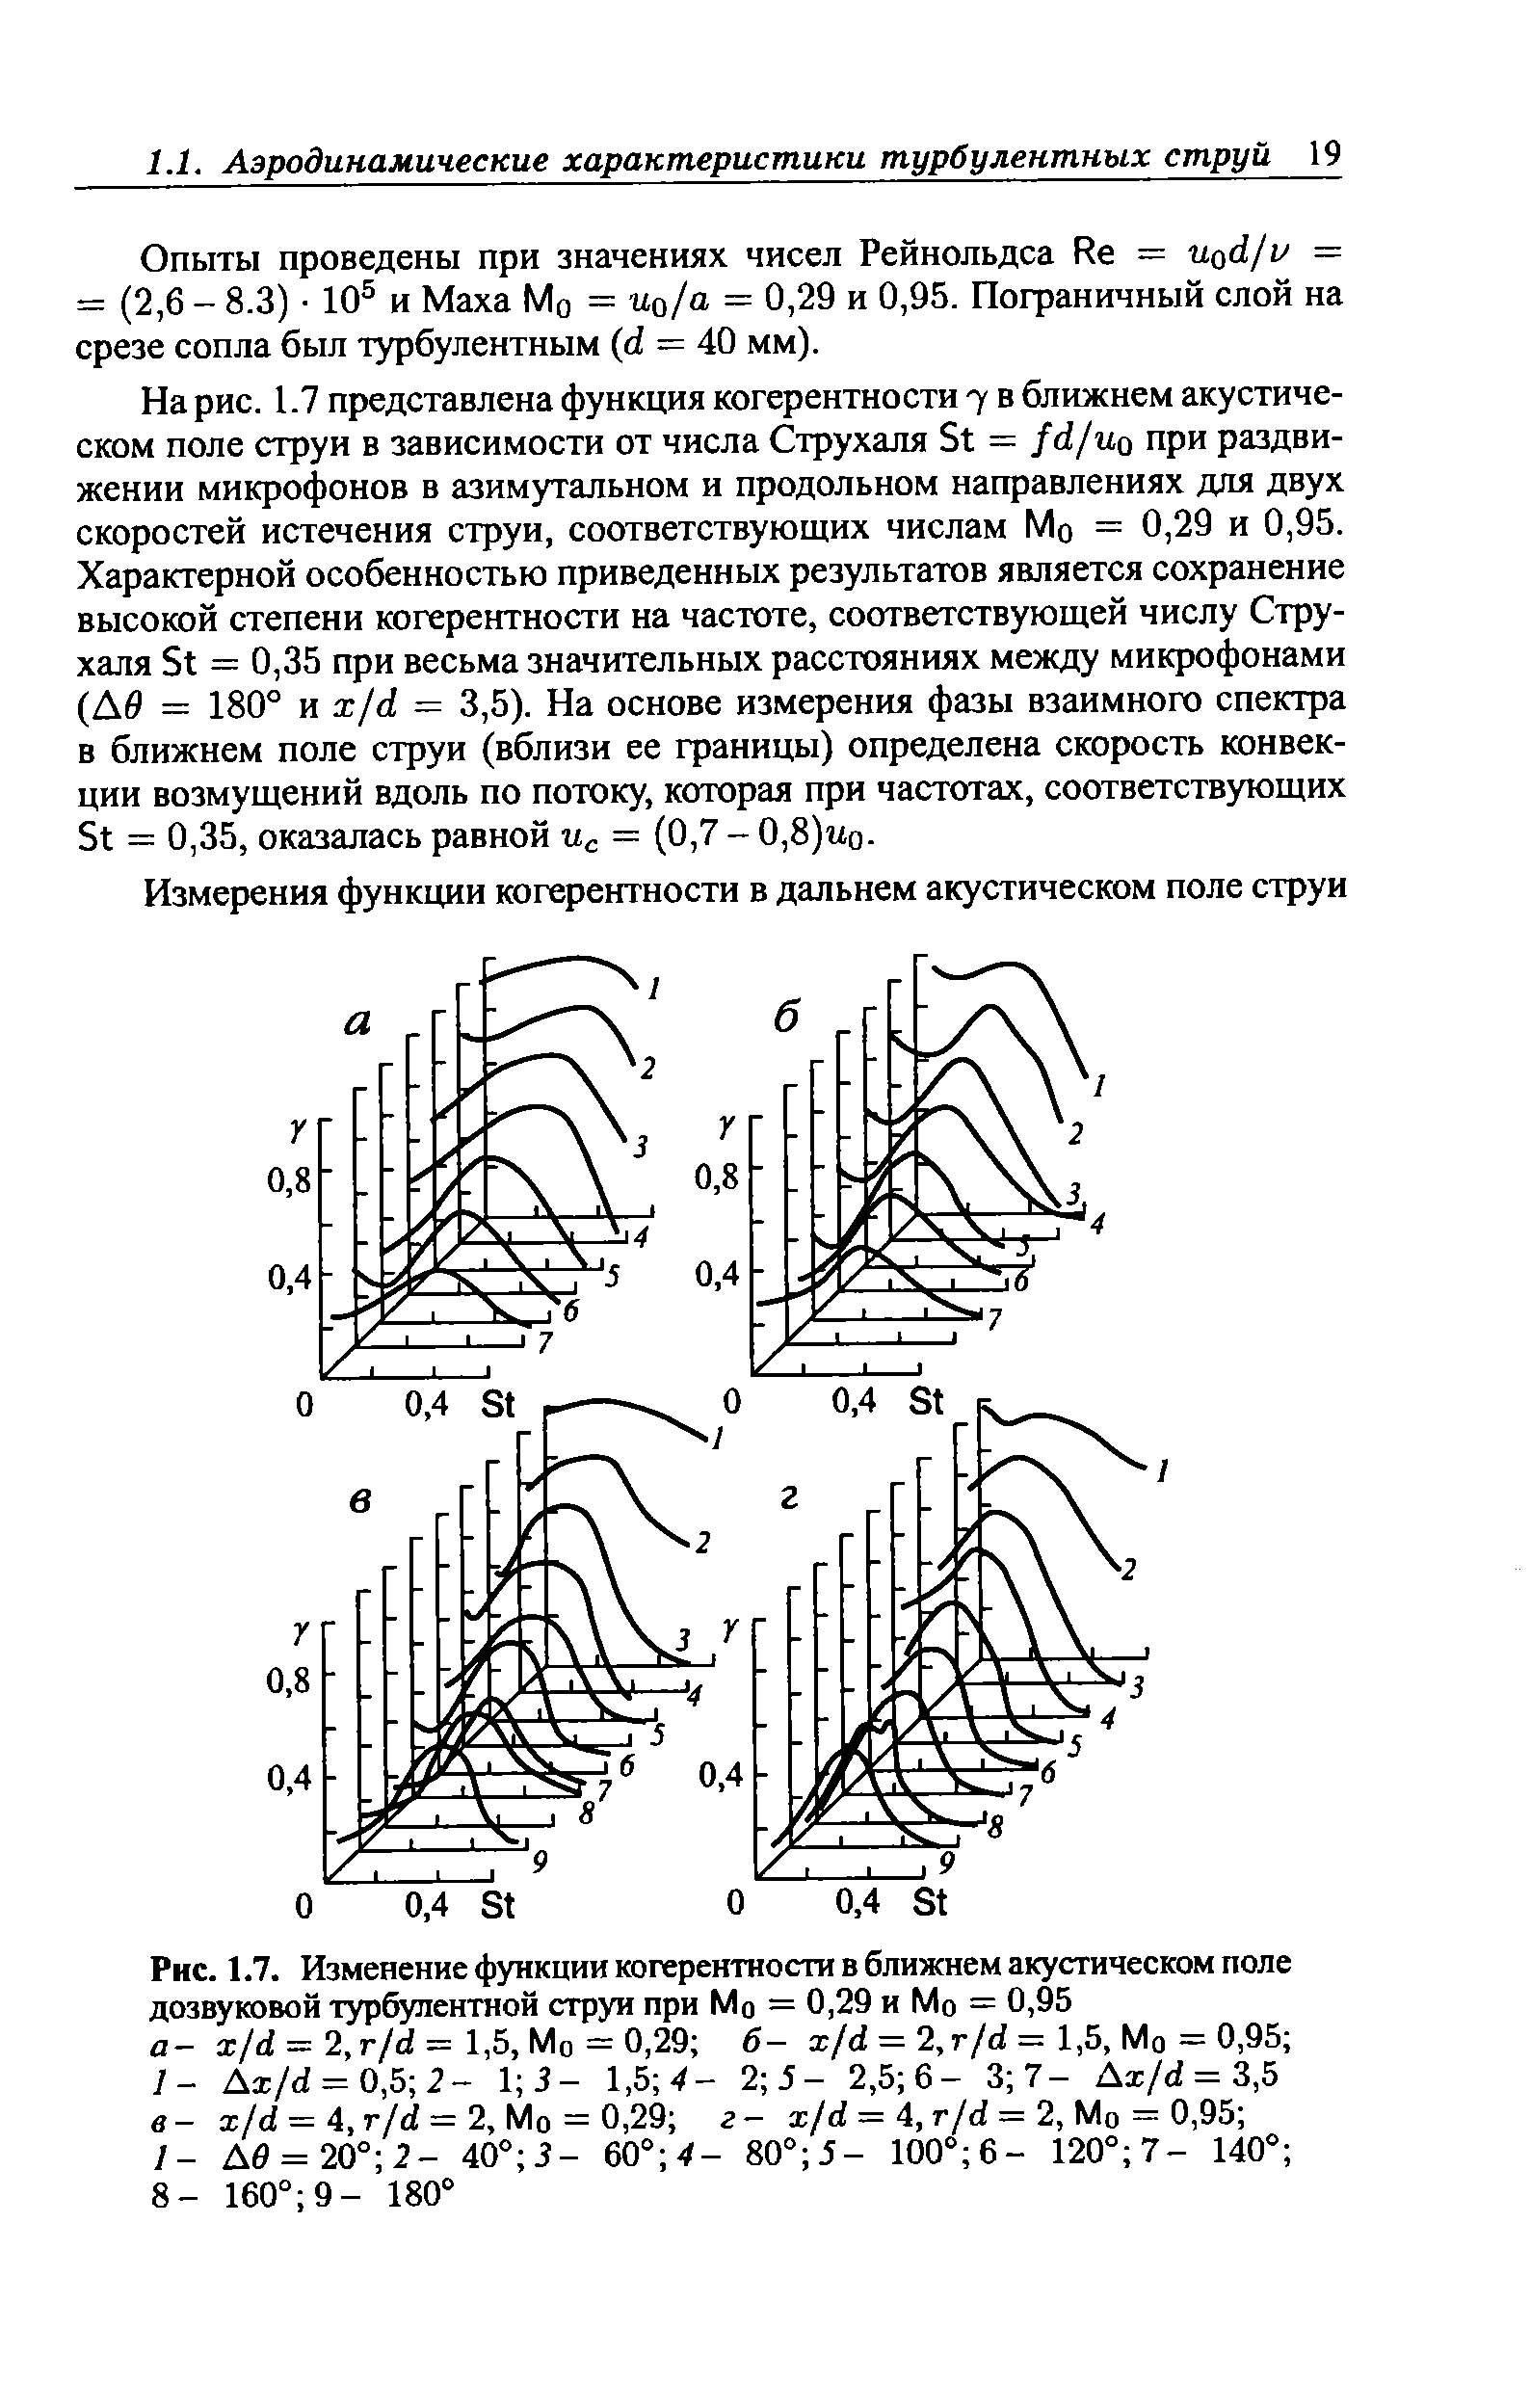 Рис. 1.7. Изменение <a href="/info/51527">функции когерентности</a> в ближнем <a href="/info/394357">акустическом поле</a> дозвуковой турбулентной струи при Мо = 0,29 и Мо = 0,95 а- x/d = 2, r/d= 1,5, Мо = 0,29 б- i/d = 2,r/d = 1,5, Мо = 0,95 /- Ax/d = 0,5 2- V, 3 - 1,Ъ 4- 2 5 - 2,5 6- 3 7- Ai/d = 3,5 в- x/d = 4, r/d = 2, Мо = 0,29 г- x/d = 4, r/d = 2, Мо = 0,95 
